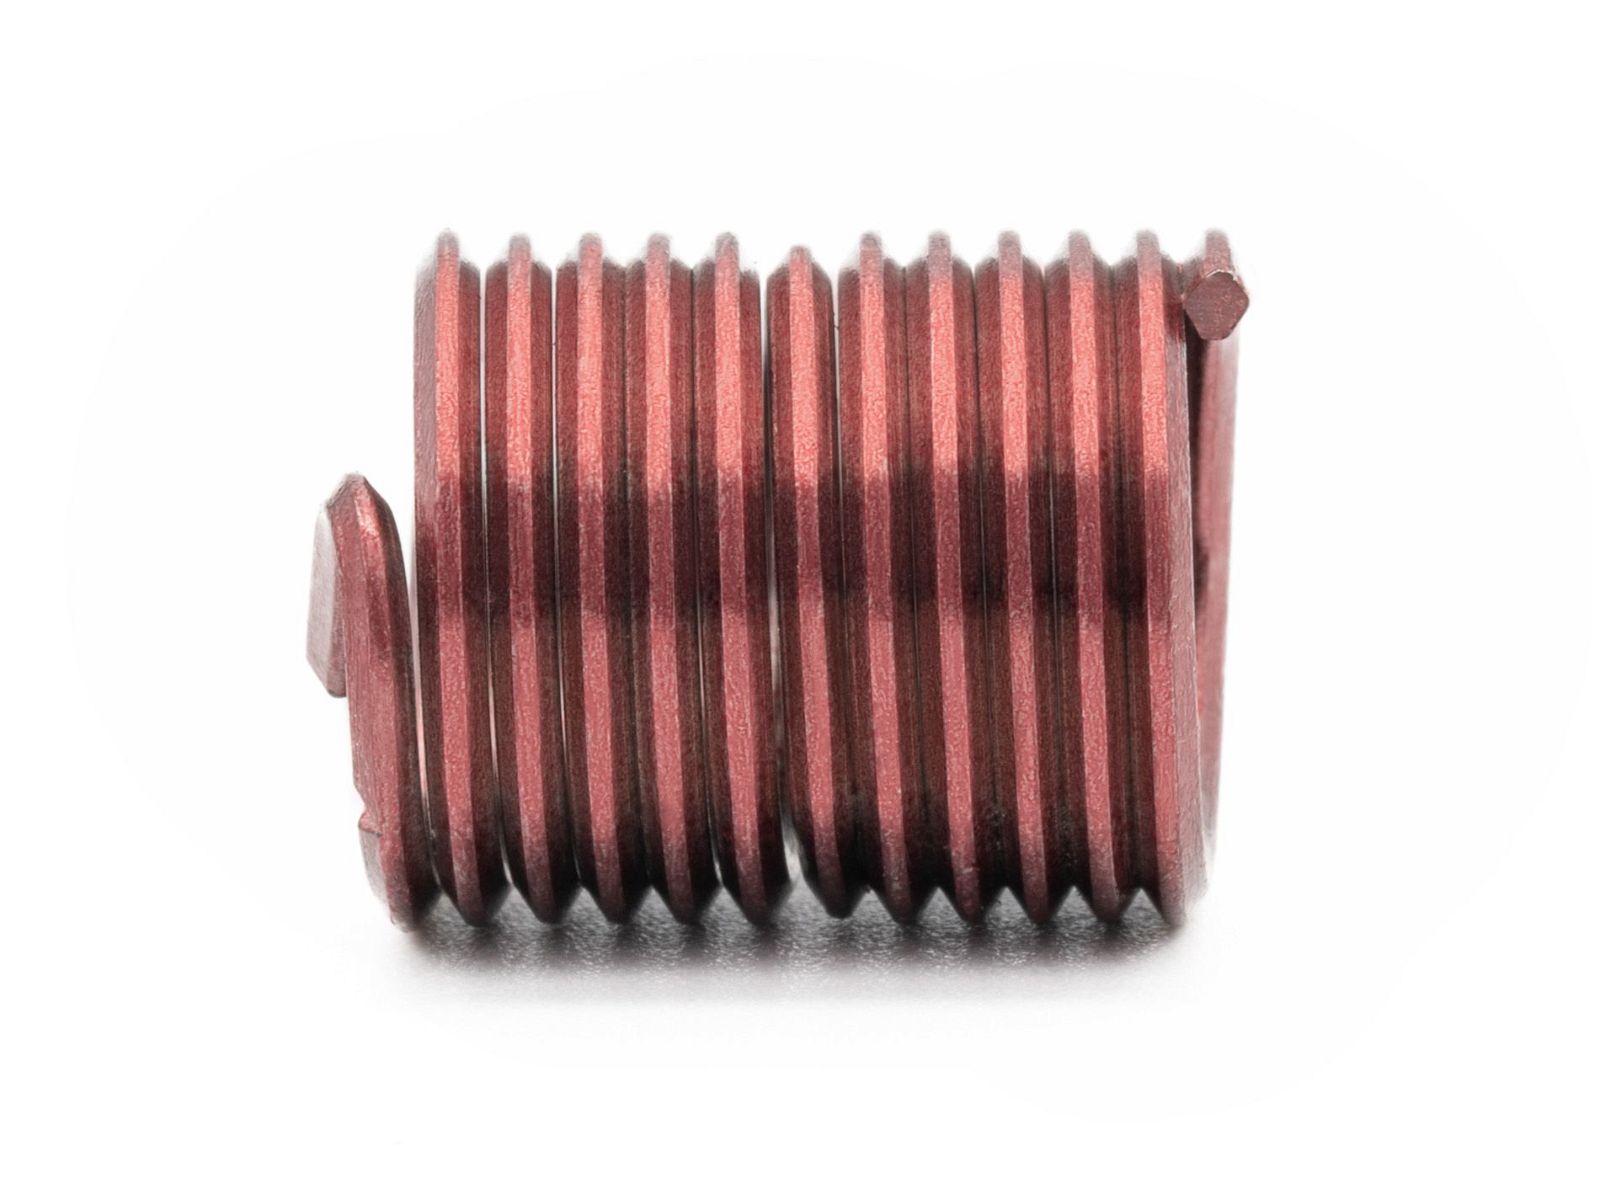 BaerCoil Wire Thread Inserts BA 0 - 2.0 D (12 mm) - screw grip (screw locking) - 100 pcs.